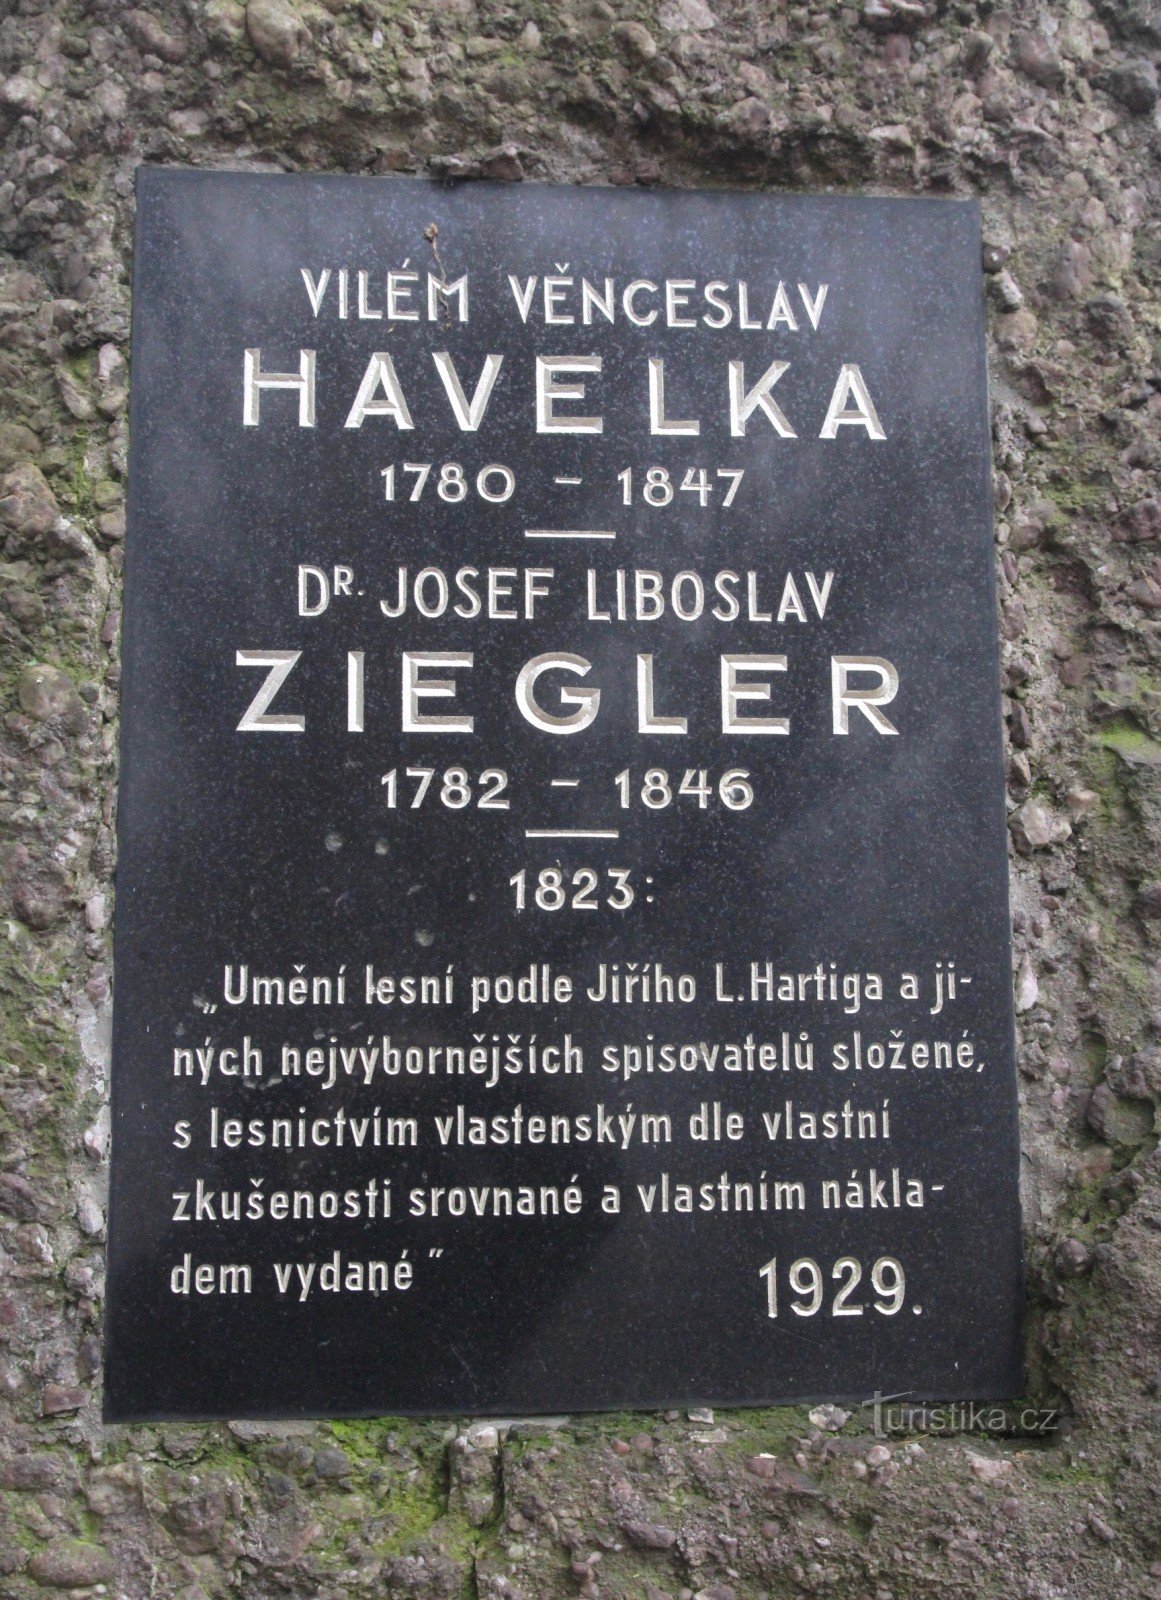 Đài tưởng niệm VV Havelka và JL Ziegler